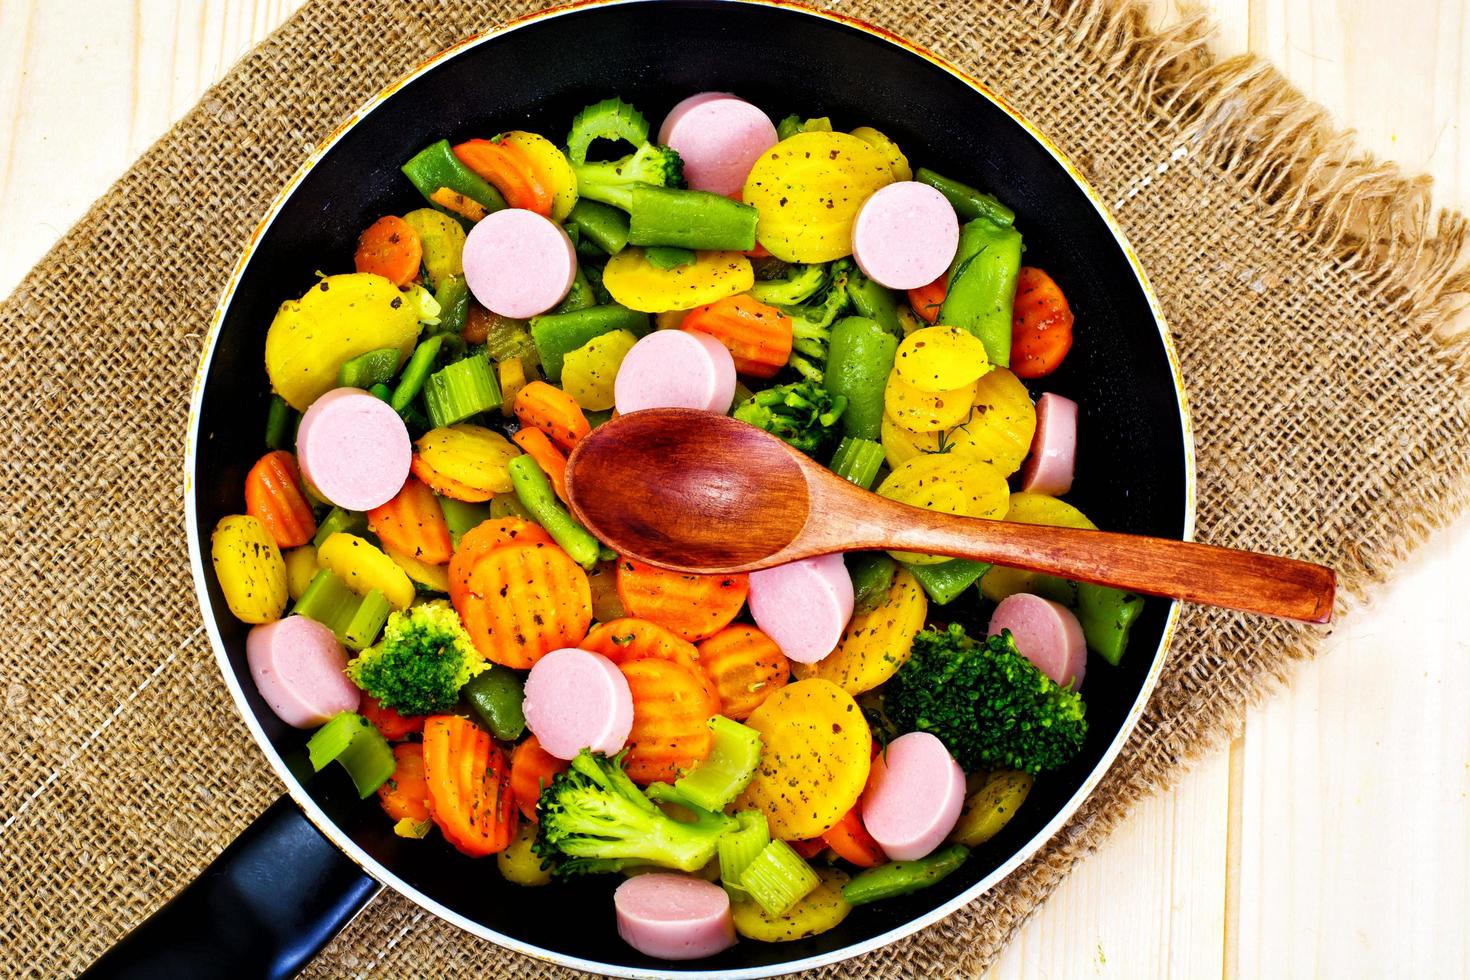 verduras al vapor patatas, zanahorias y brócoli con salchichas foto